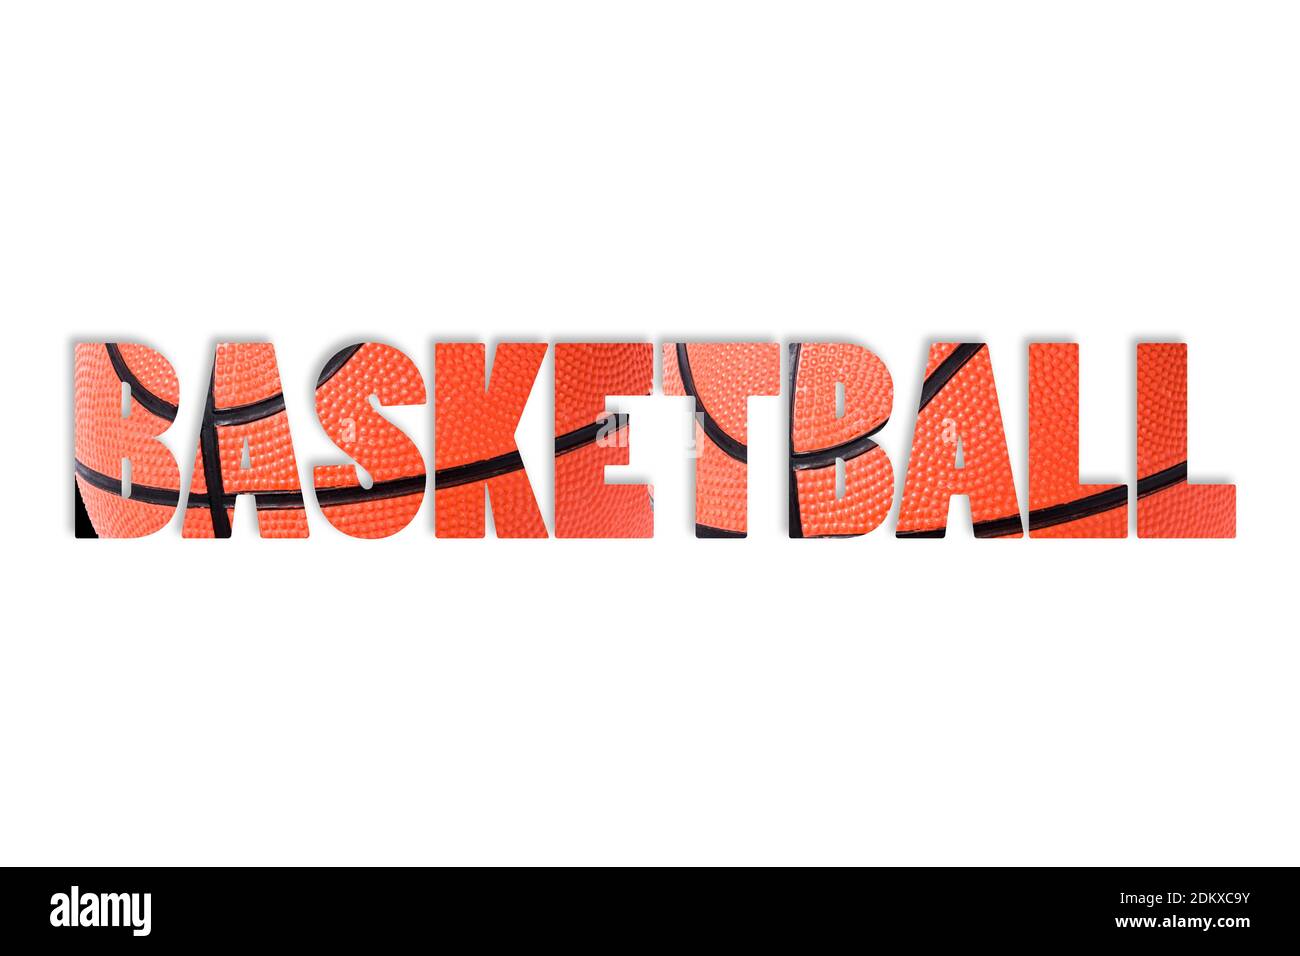 Basketball word Banque d'images détourées - Alamy